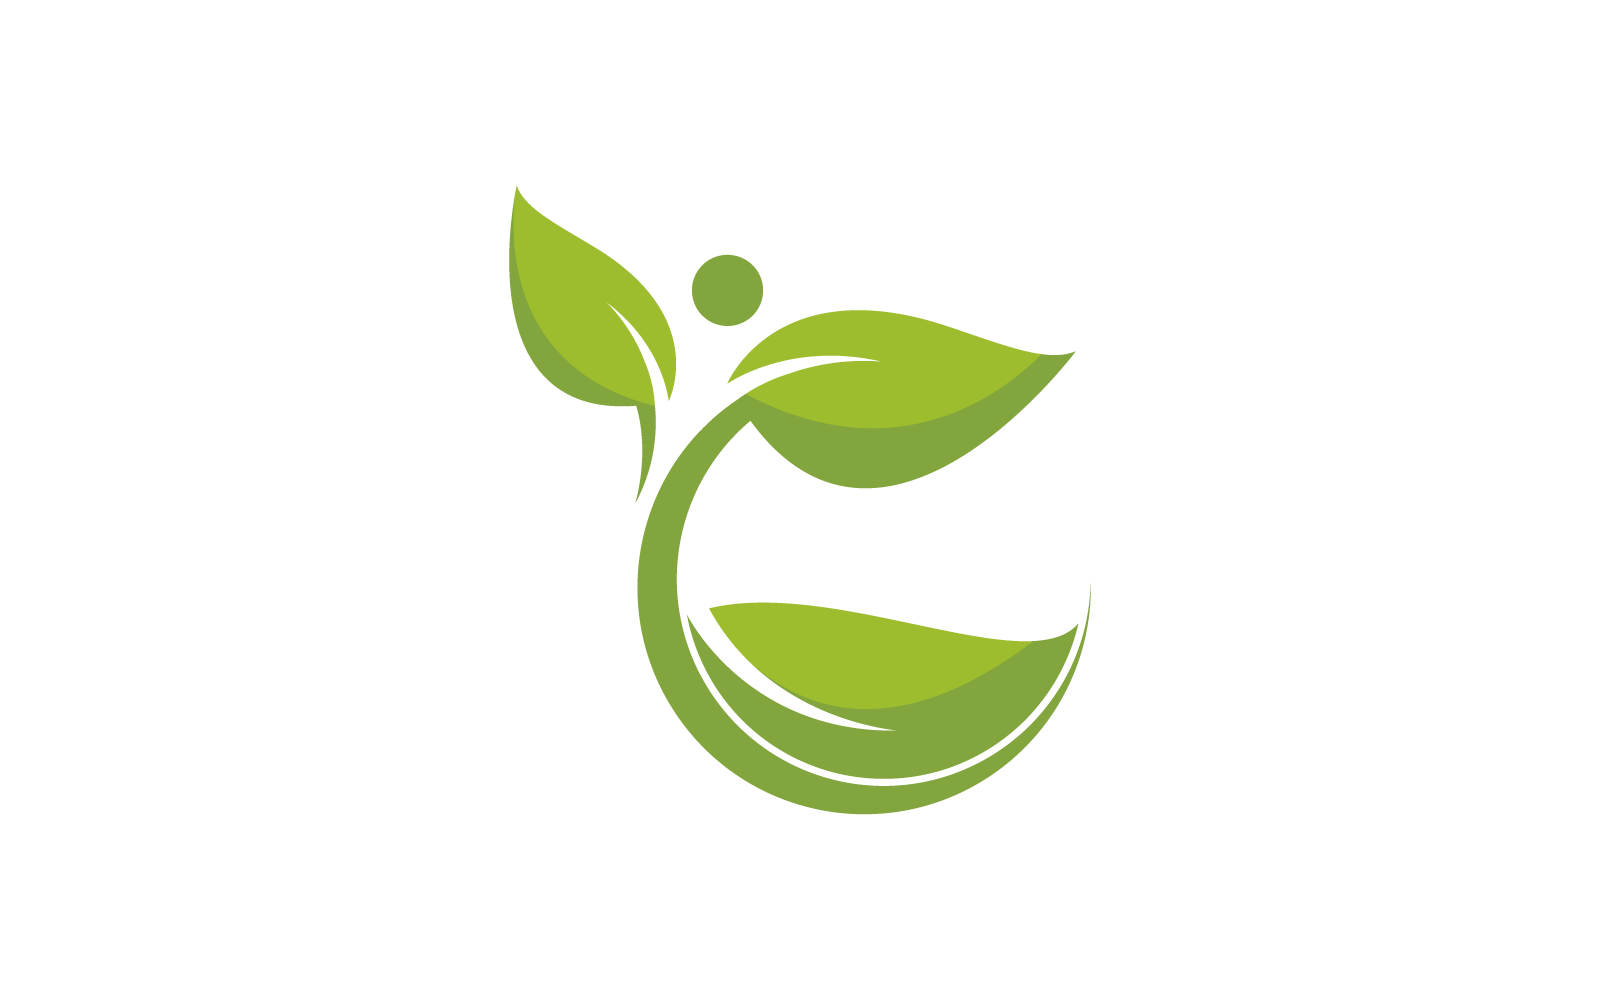 Green leaf logo illustration nature vector design